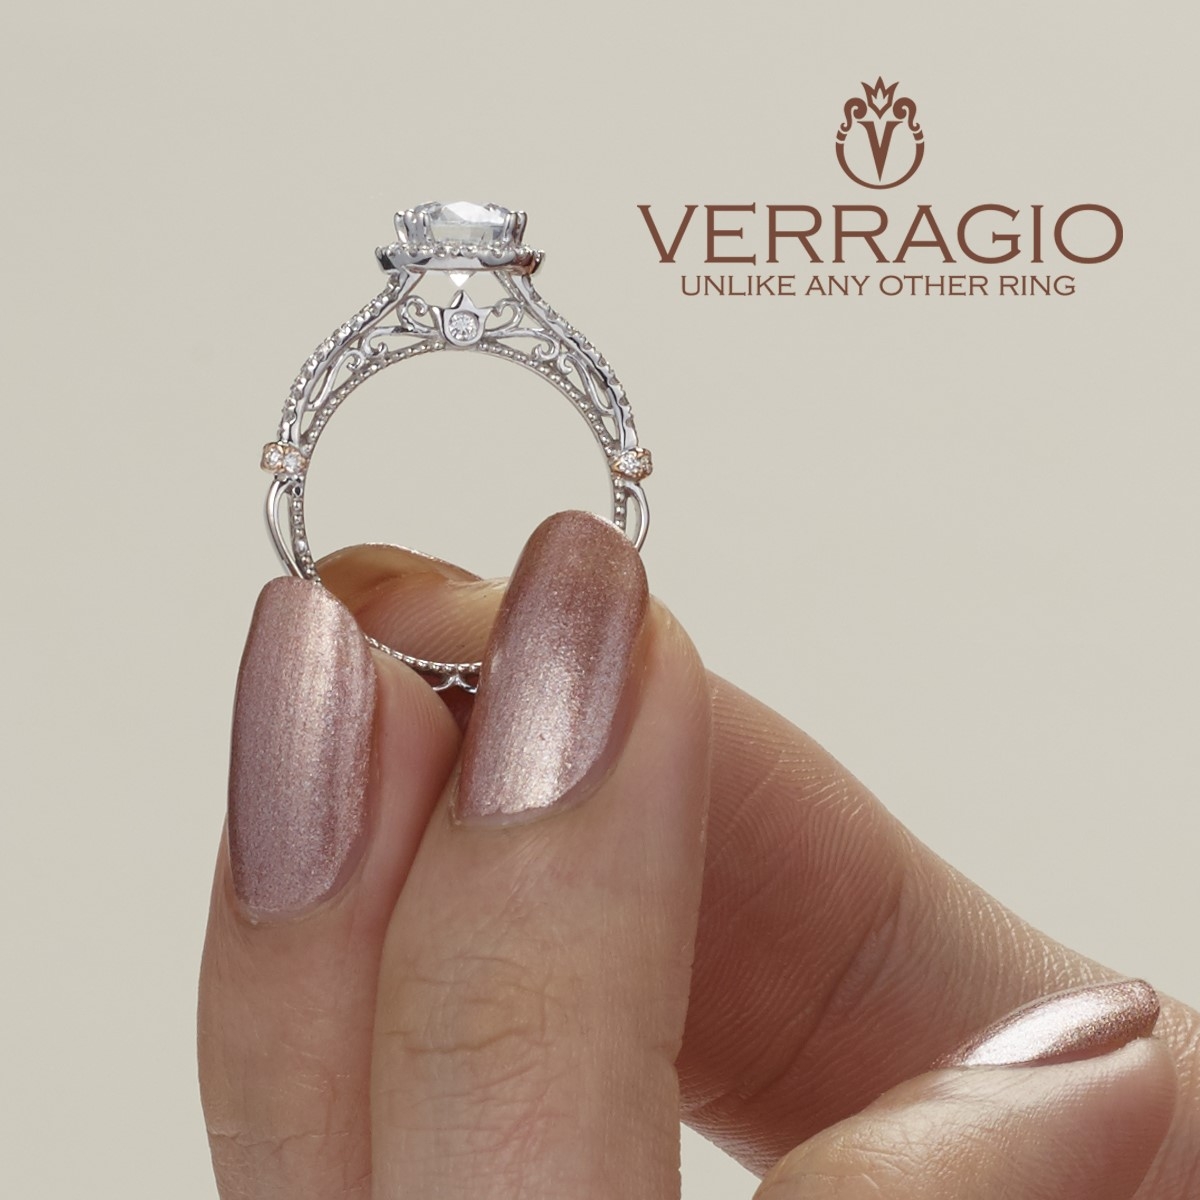 Verragio Parisian-DL107R 18 Karat Engagement Ring